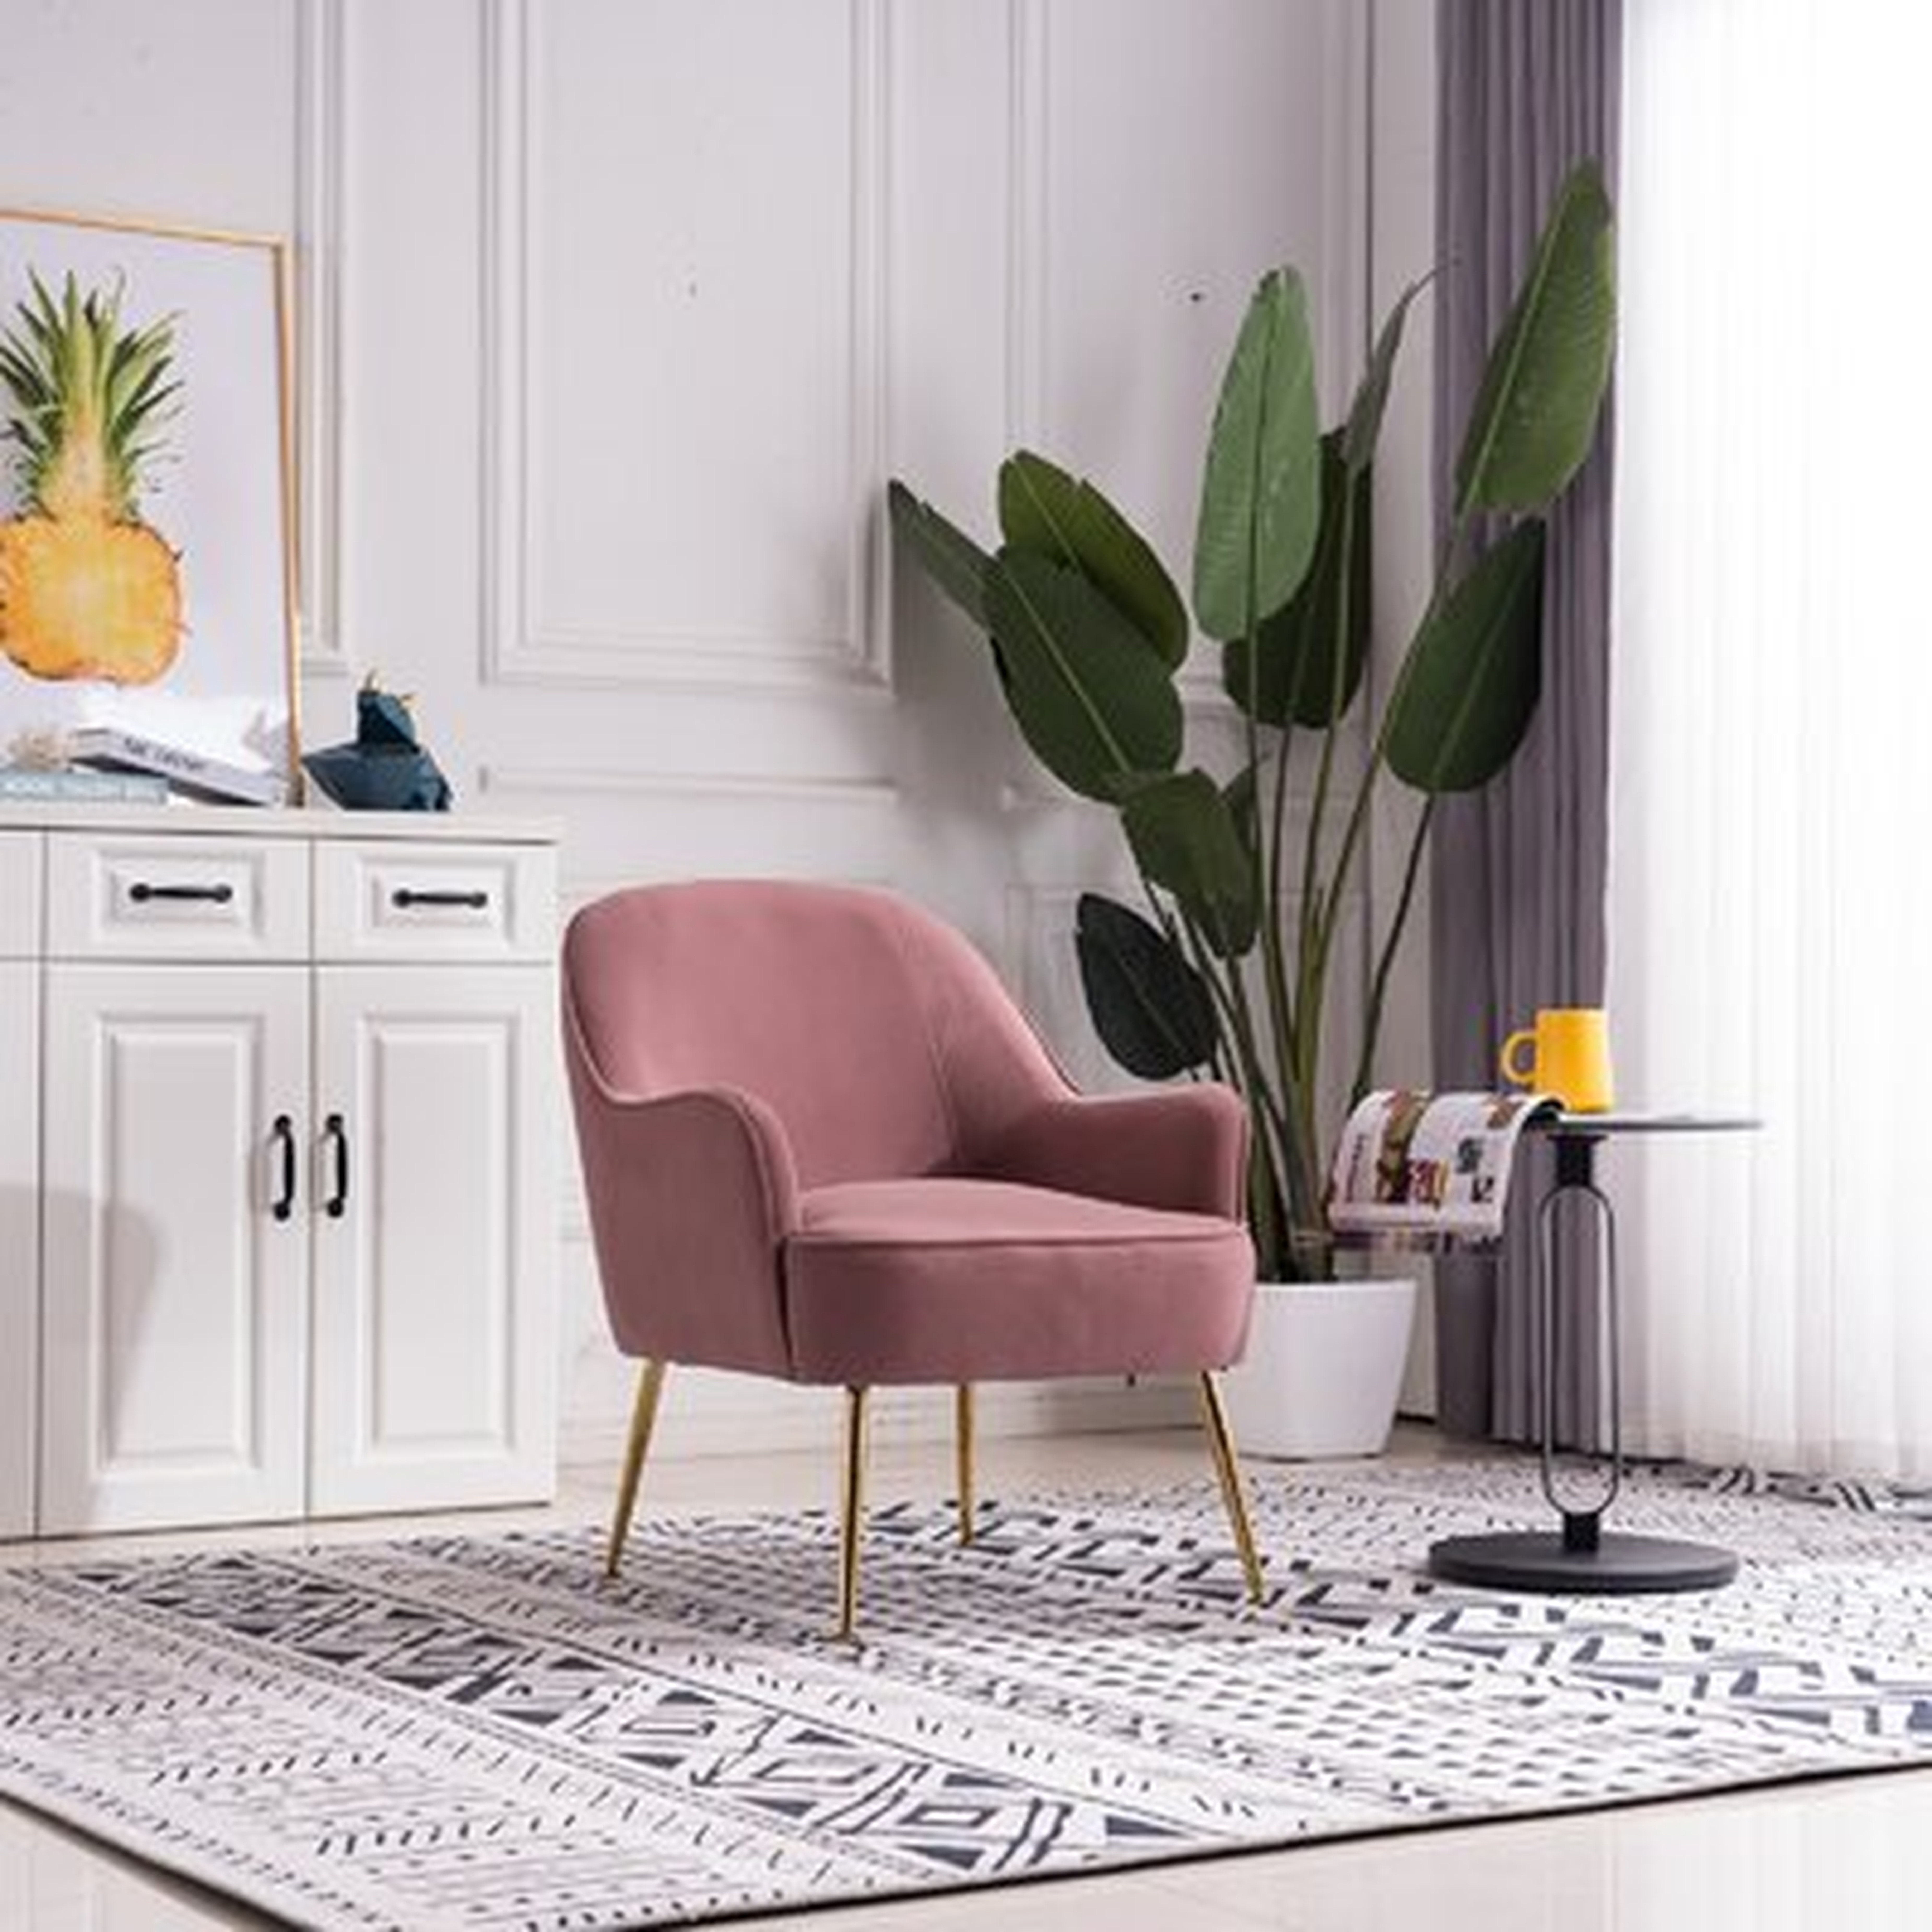 Modern Soft Ergonomics Accent Chair Living Room Chair With Gold Legs - Wayfair